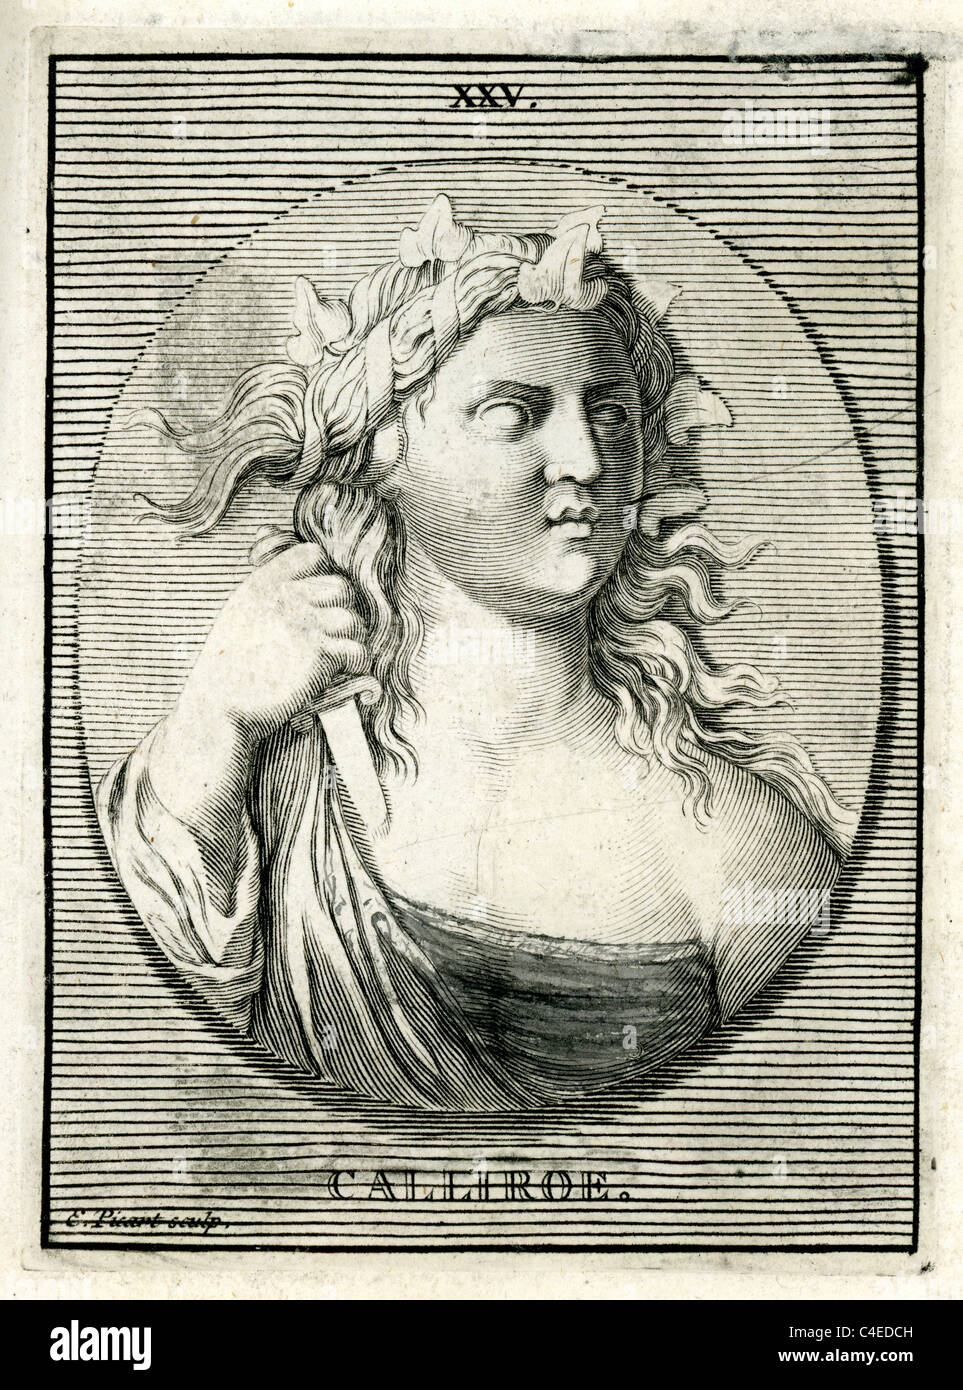 Portrait de classique (Callirrhoe Calliroe) dans la mythologie grecque, était un Callirrhoe naiad Banque D'Images